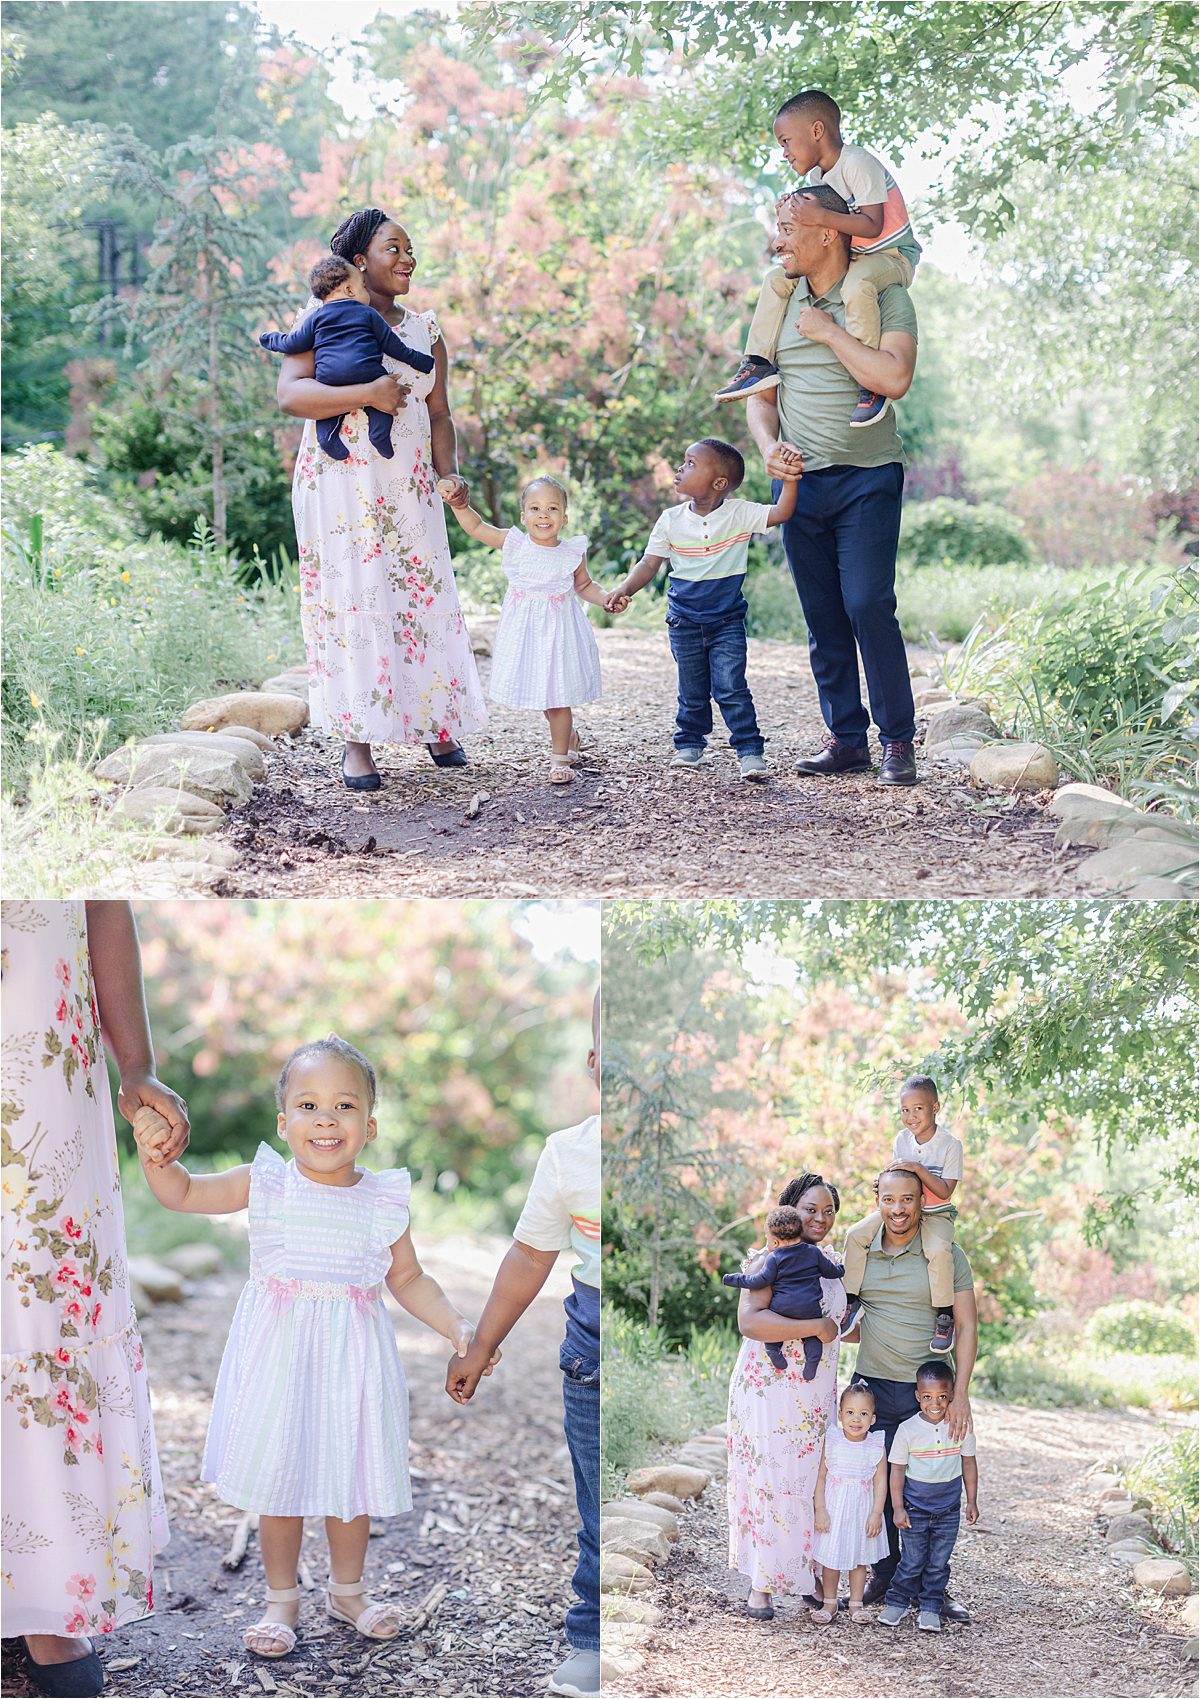 Beautiful professional family pictures taken at UGA Botanical Gardens.